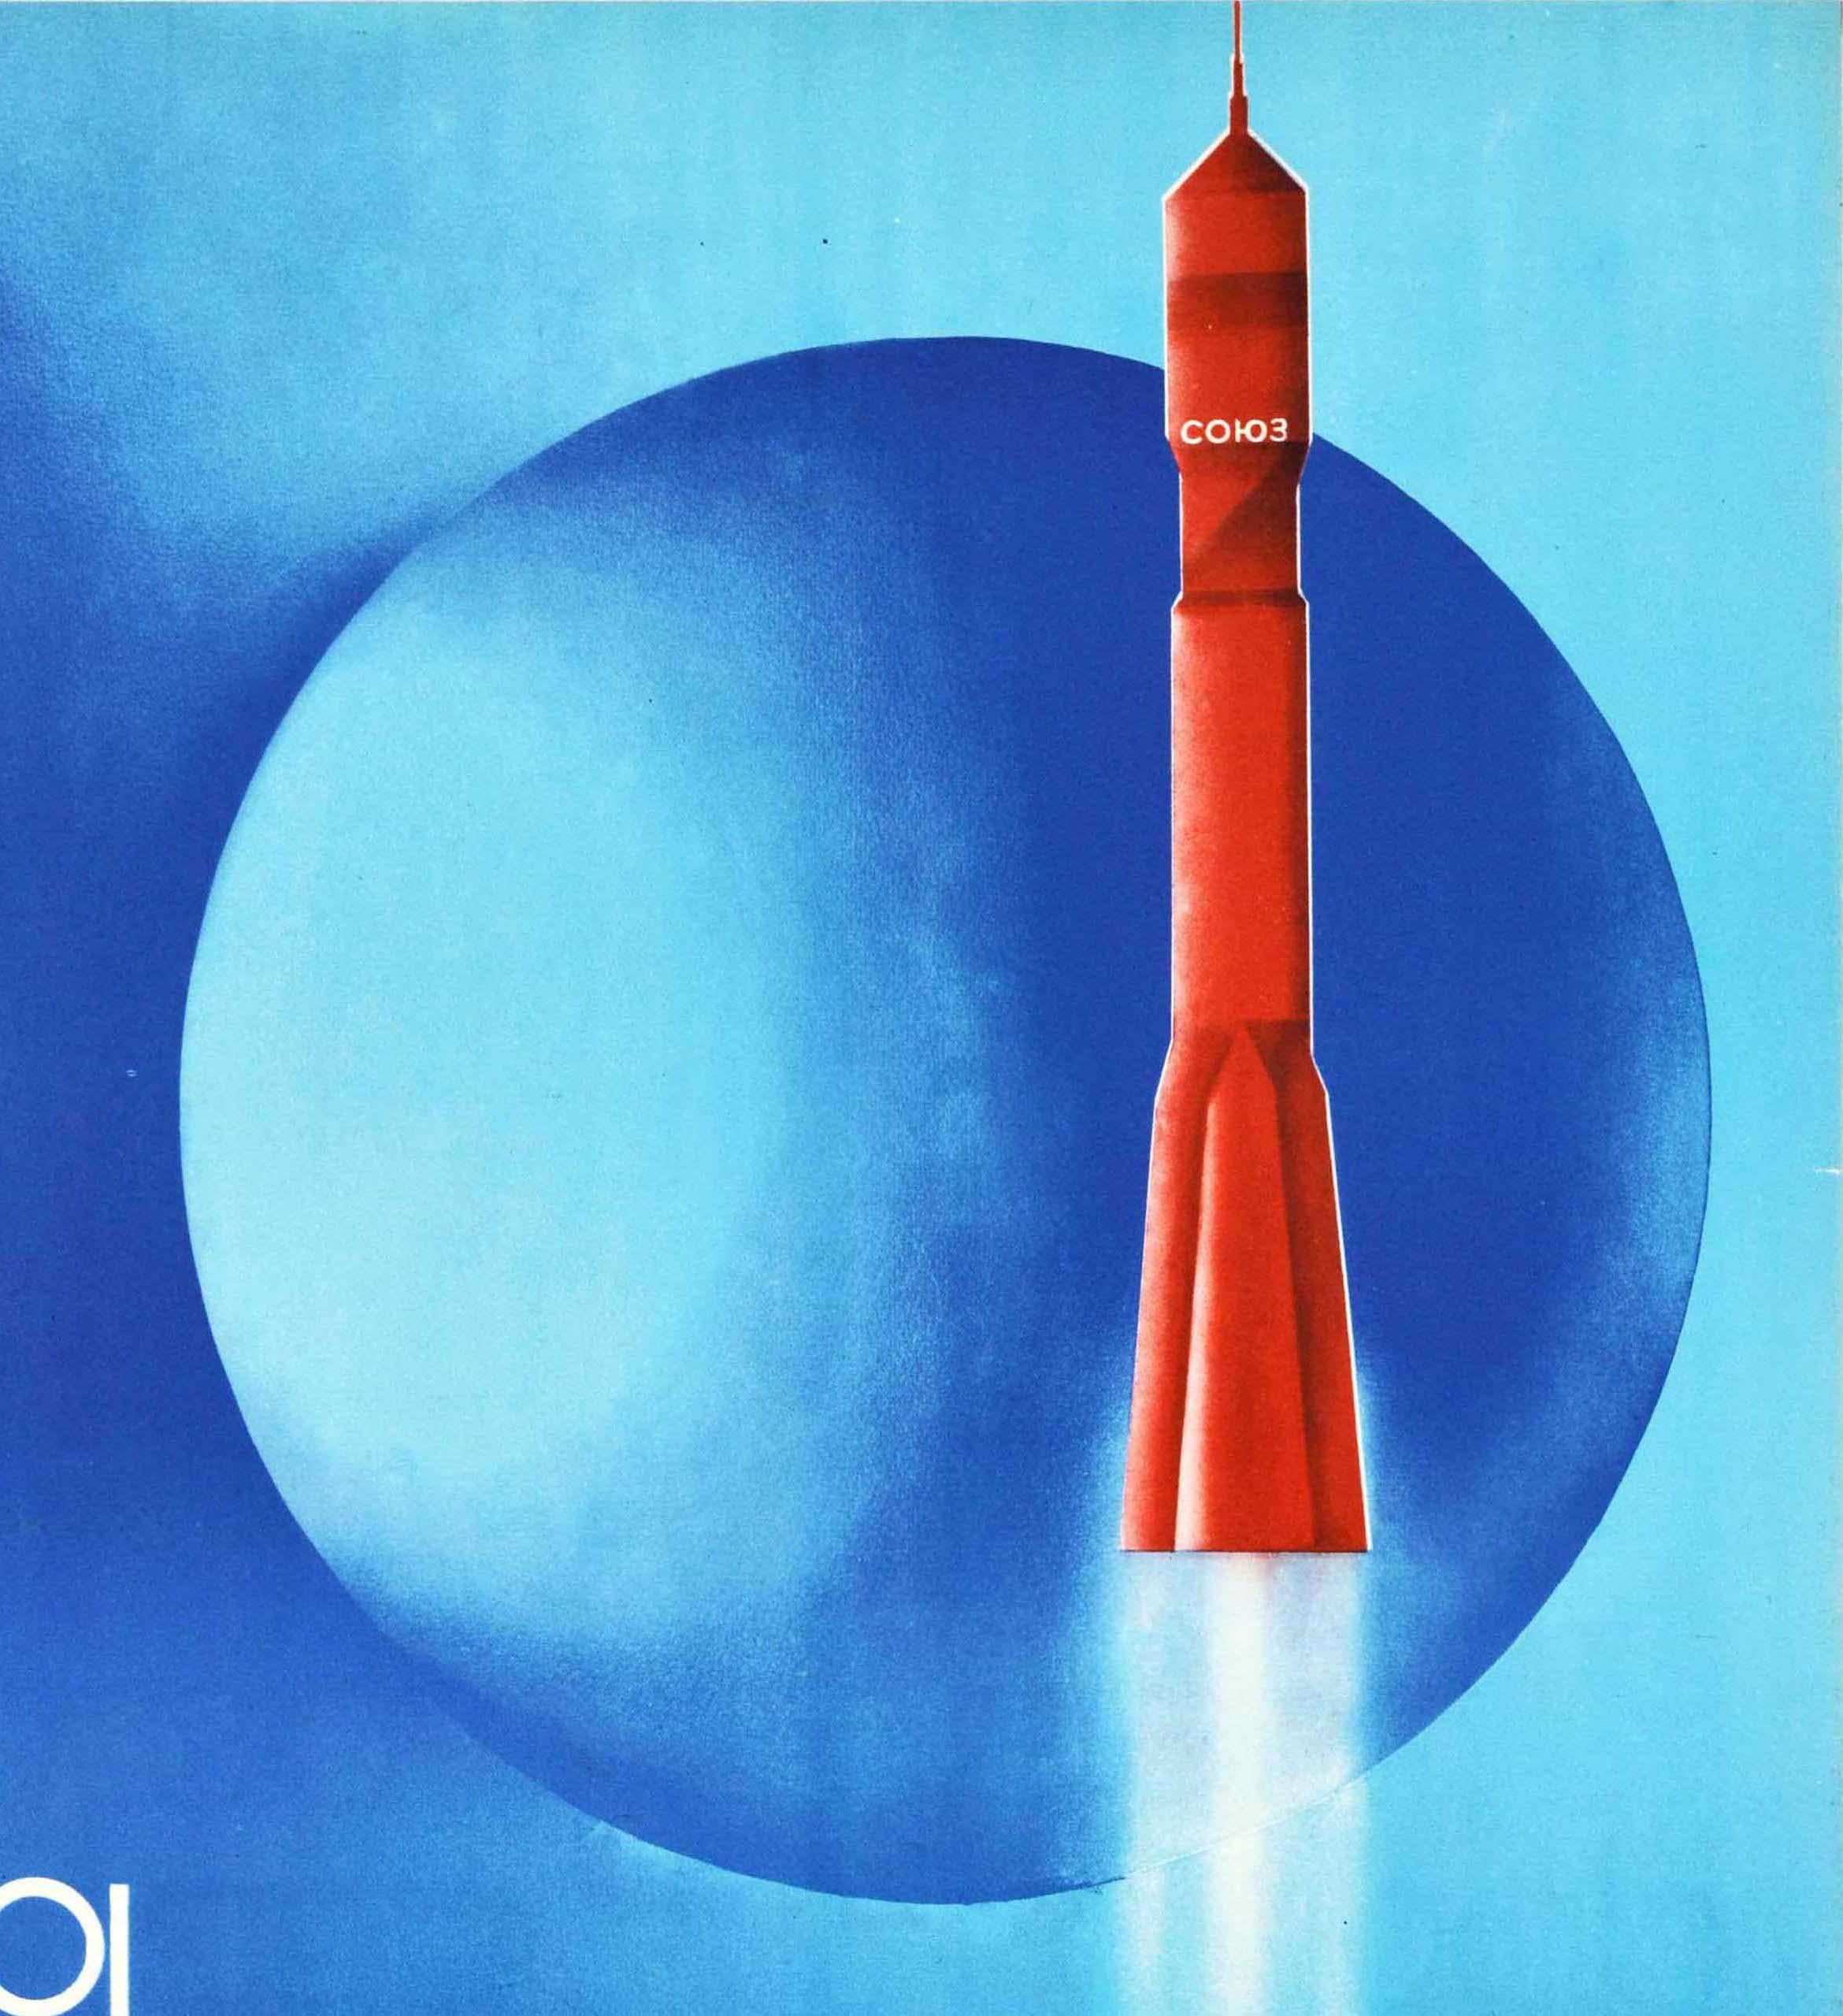 Original Vintage Soviet Space Achievements Rocket USSR Soyuz Astronaut Cosmonaut - Print by G Kornienko